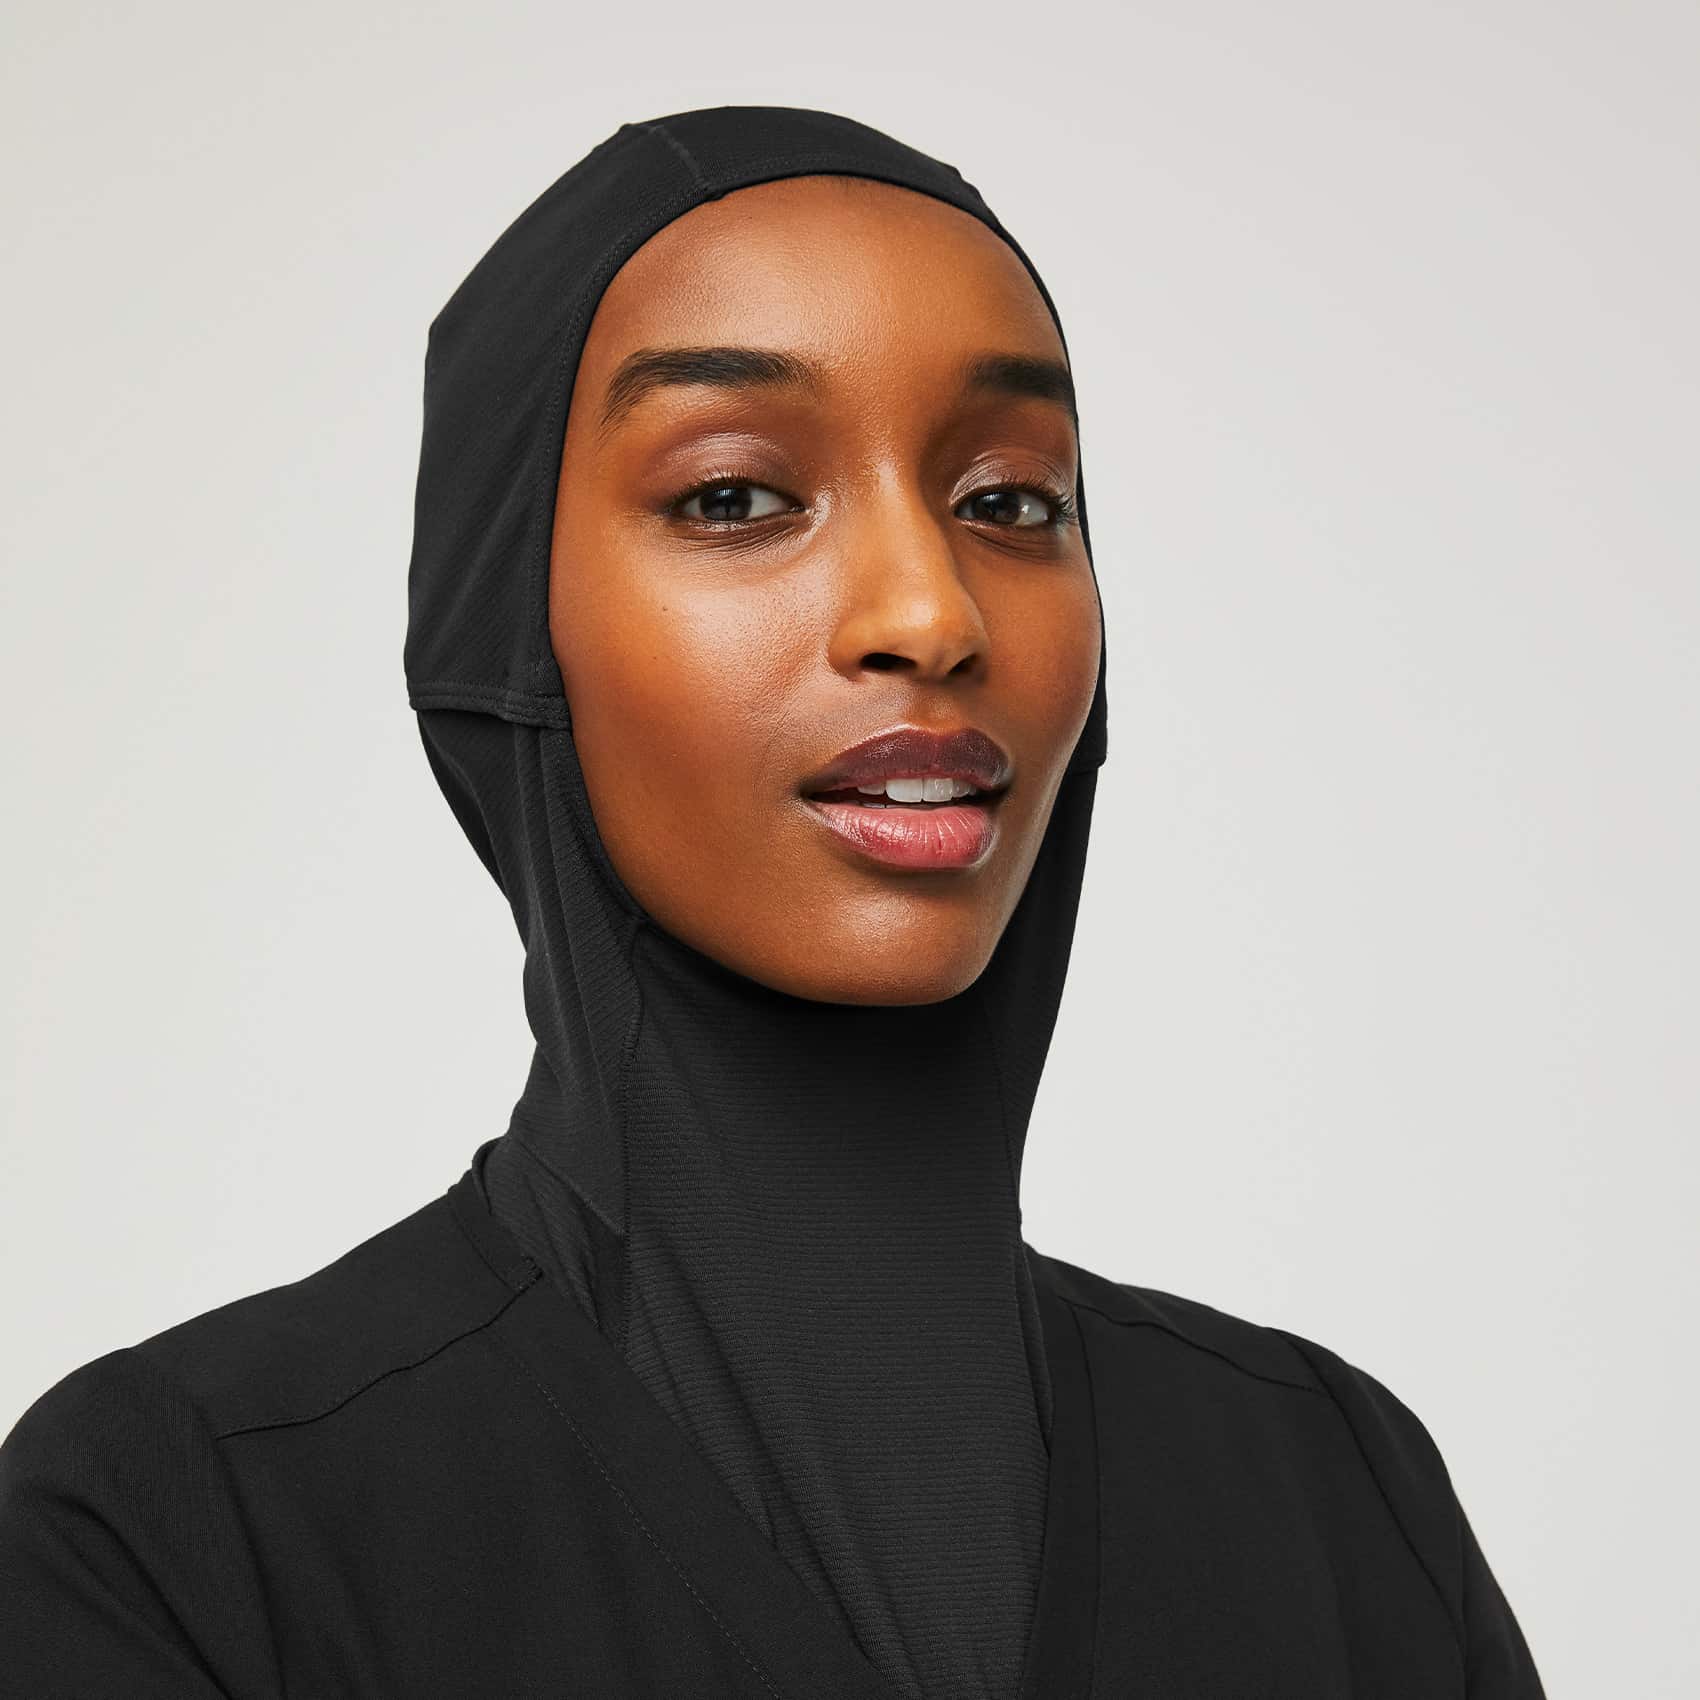 https://cdn.shopify.com/s/files/1/0139/8942/products/Womens-Hijab-black-2.jpg?v=1635381500